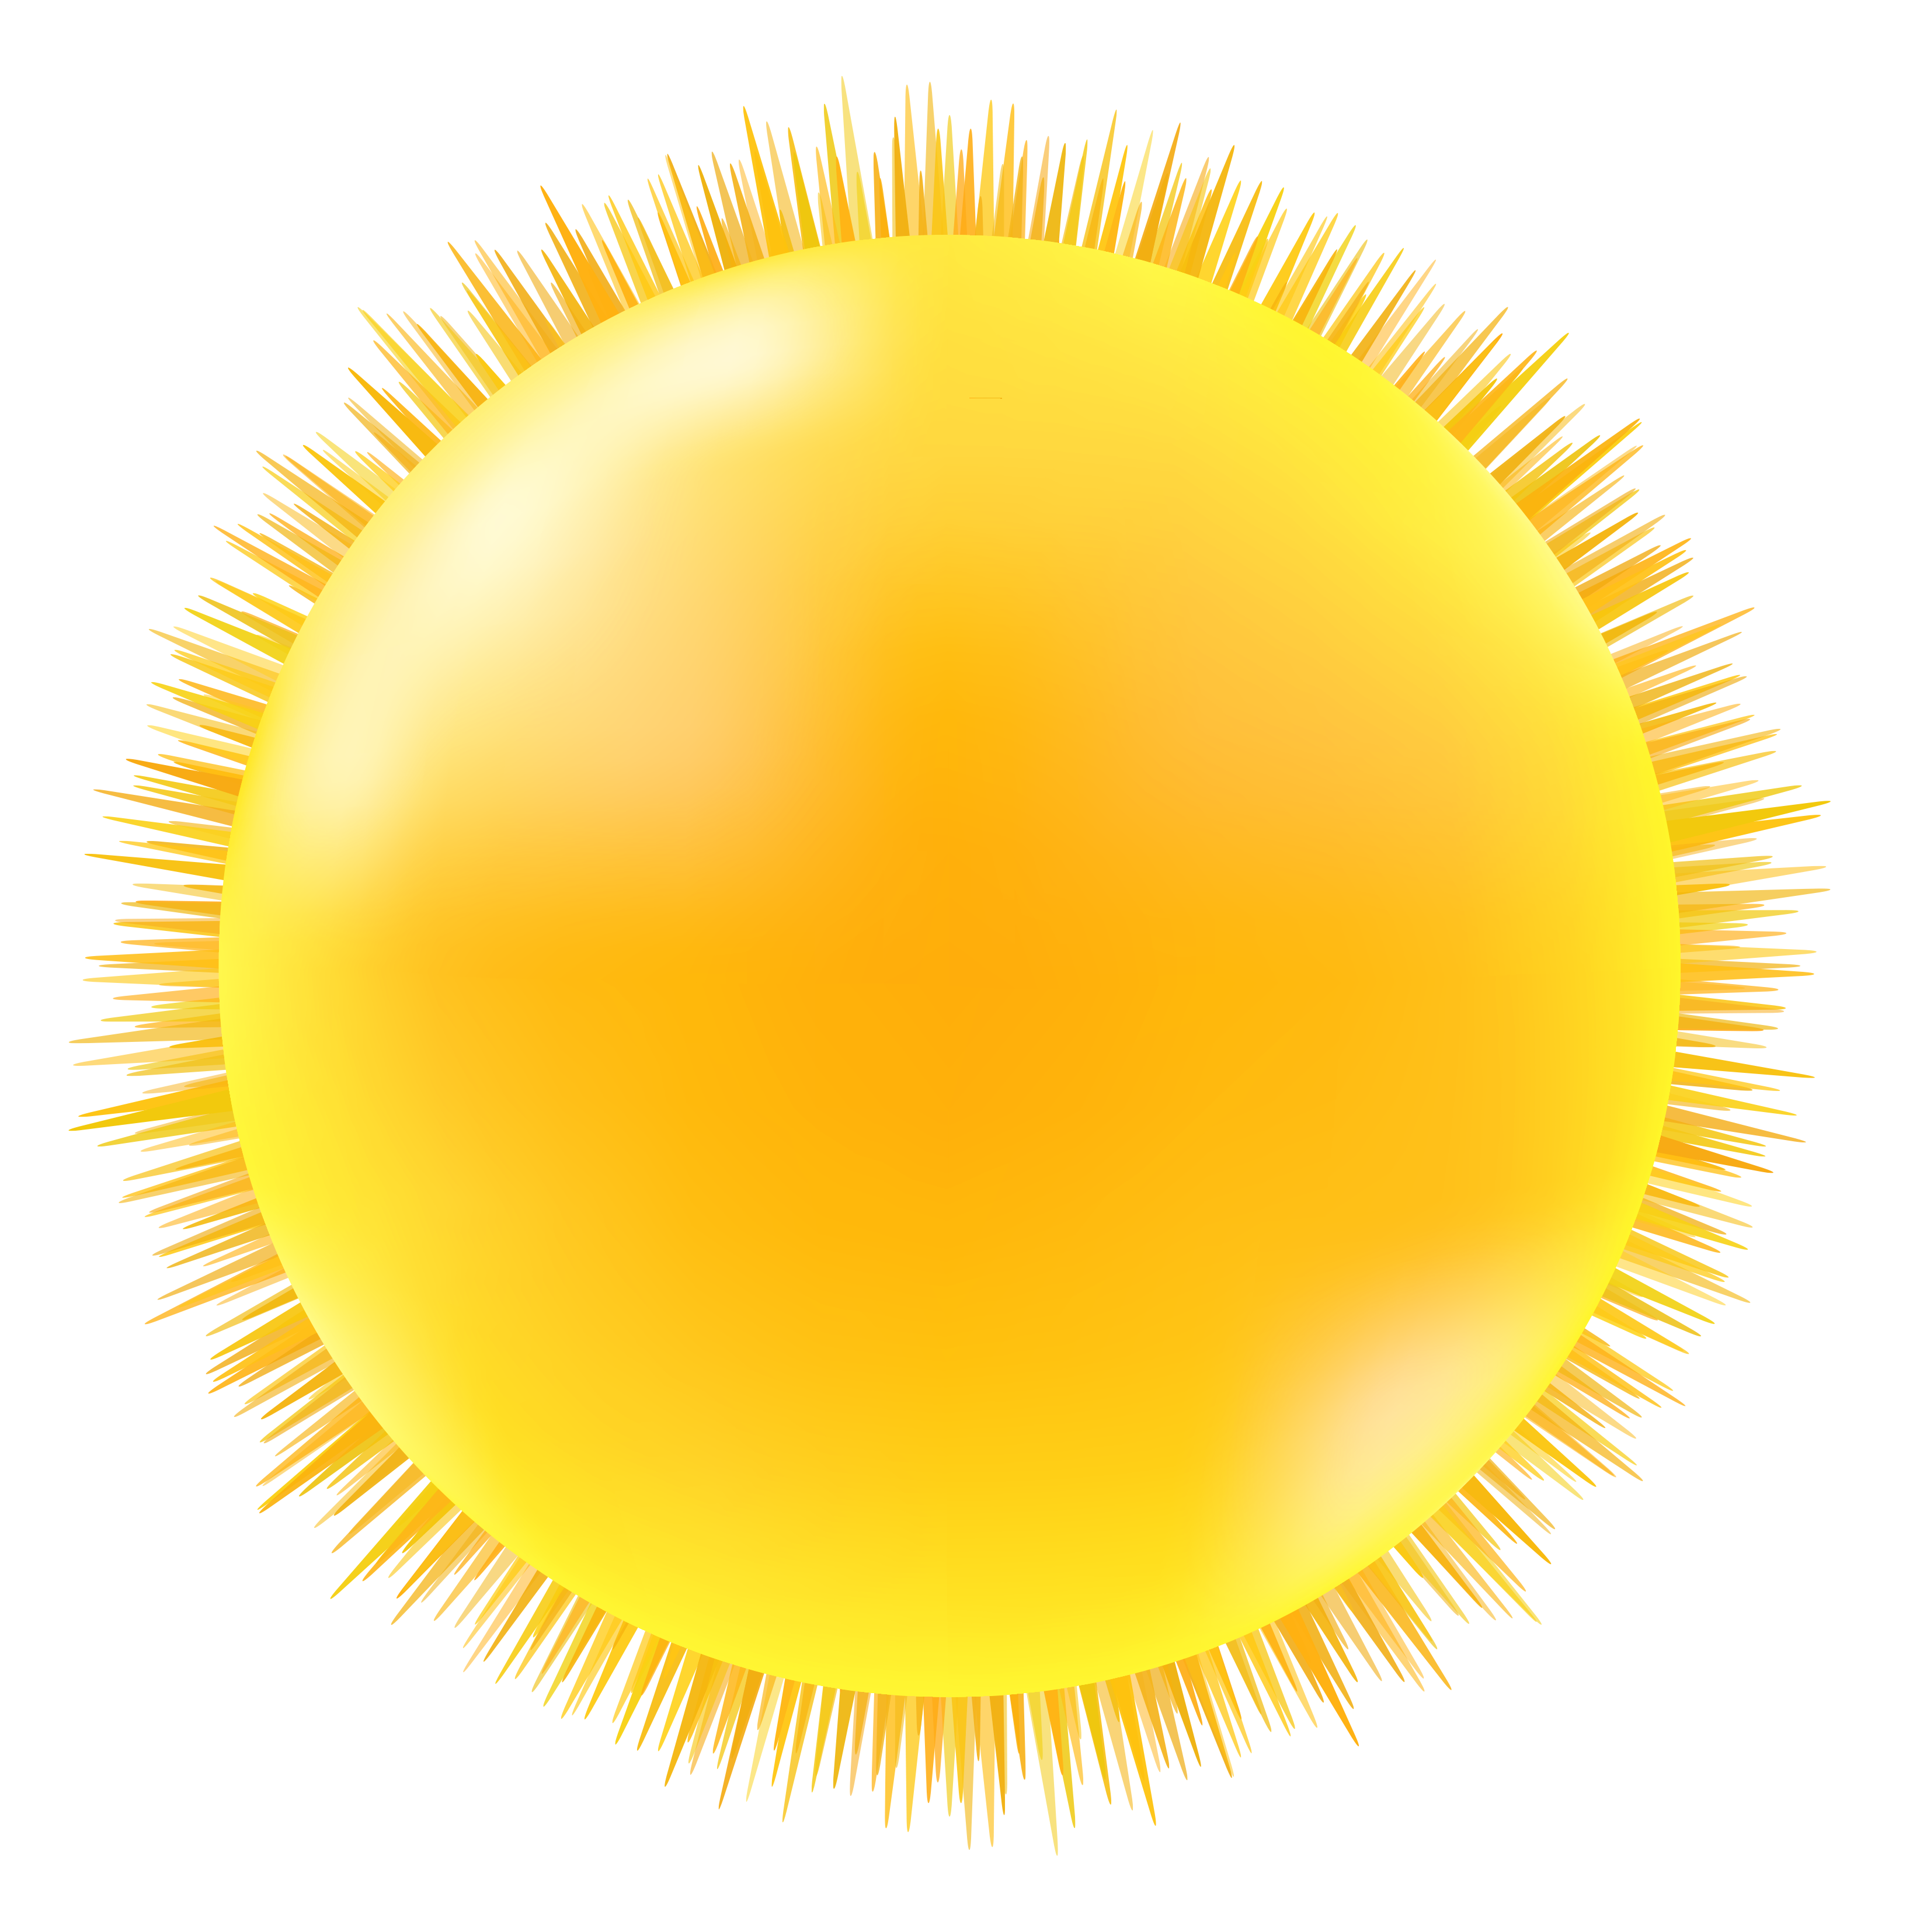 Bạn đang muốn sử dụng hình ảnh mặt trời png trong suốt để thể hiện vẻ đẹp sáng sủa và sống động của nó? Chúng tôi có thể giúp bạn! Tải xuống hình ảnh mặt trời PNG trong suốt với kích thước 3276x3308px để đảm bảo chất lượng cao nhất trong mọi ứng dụng của bạn.